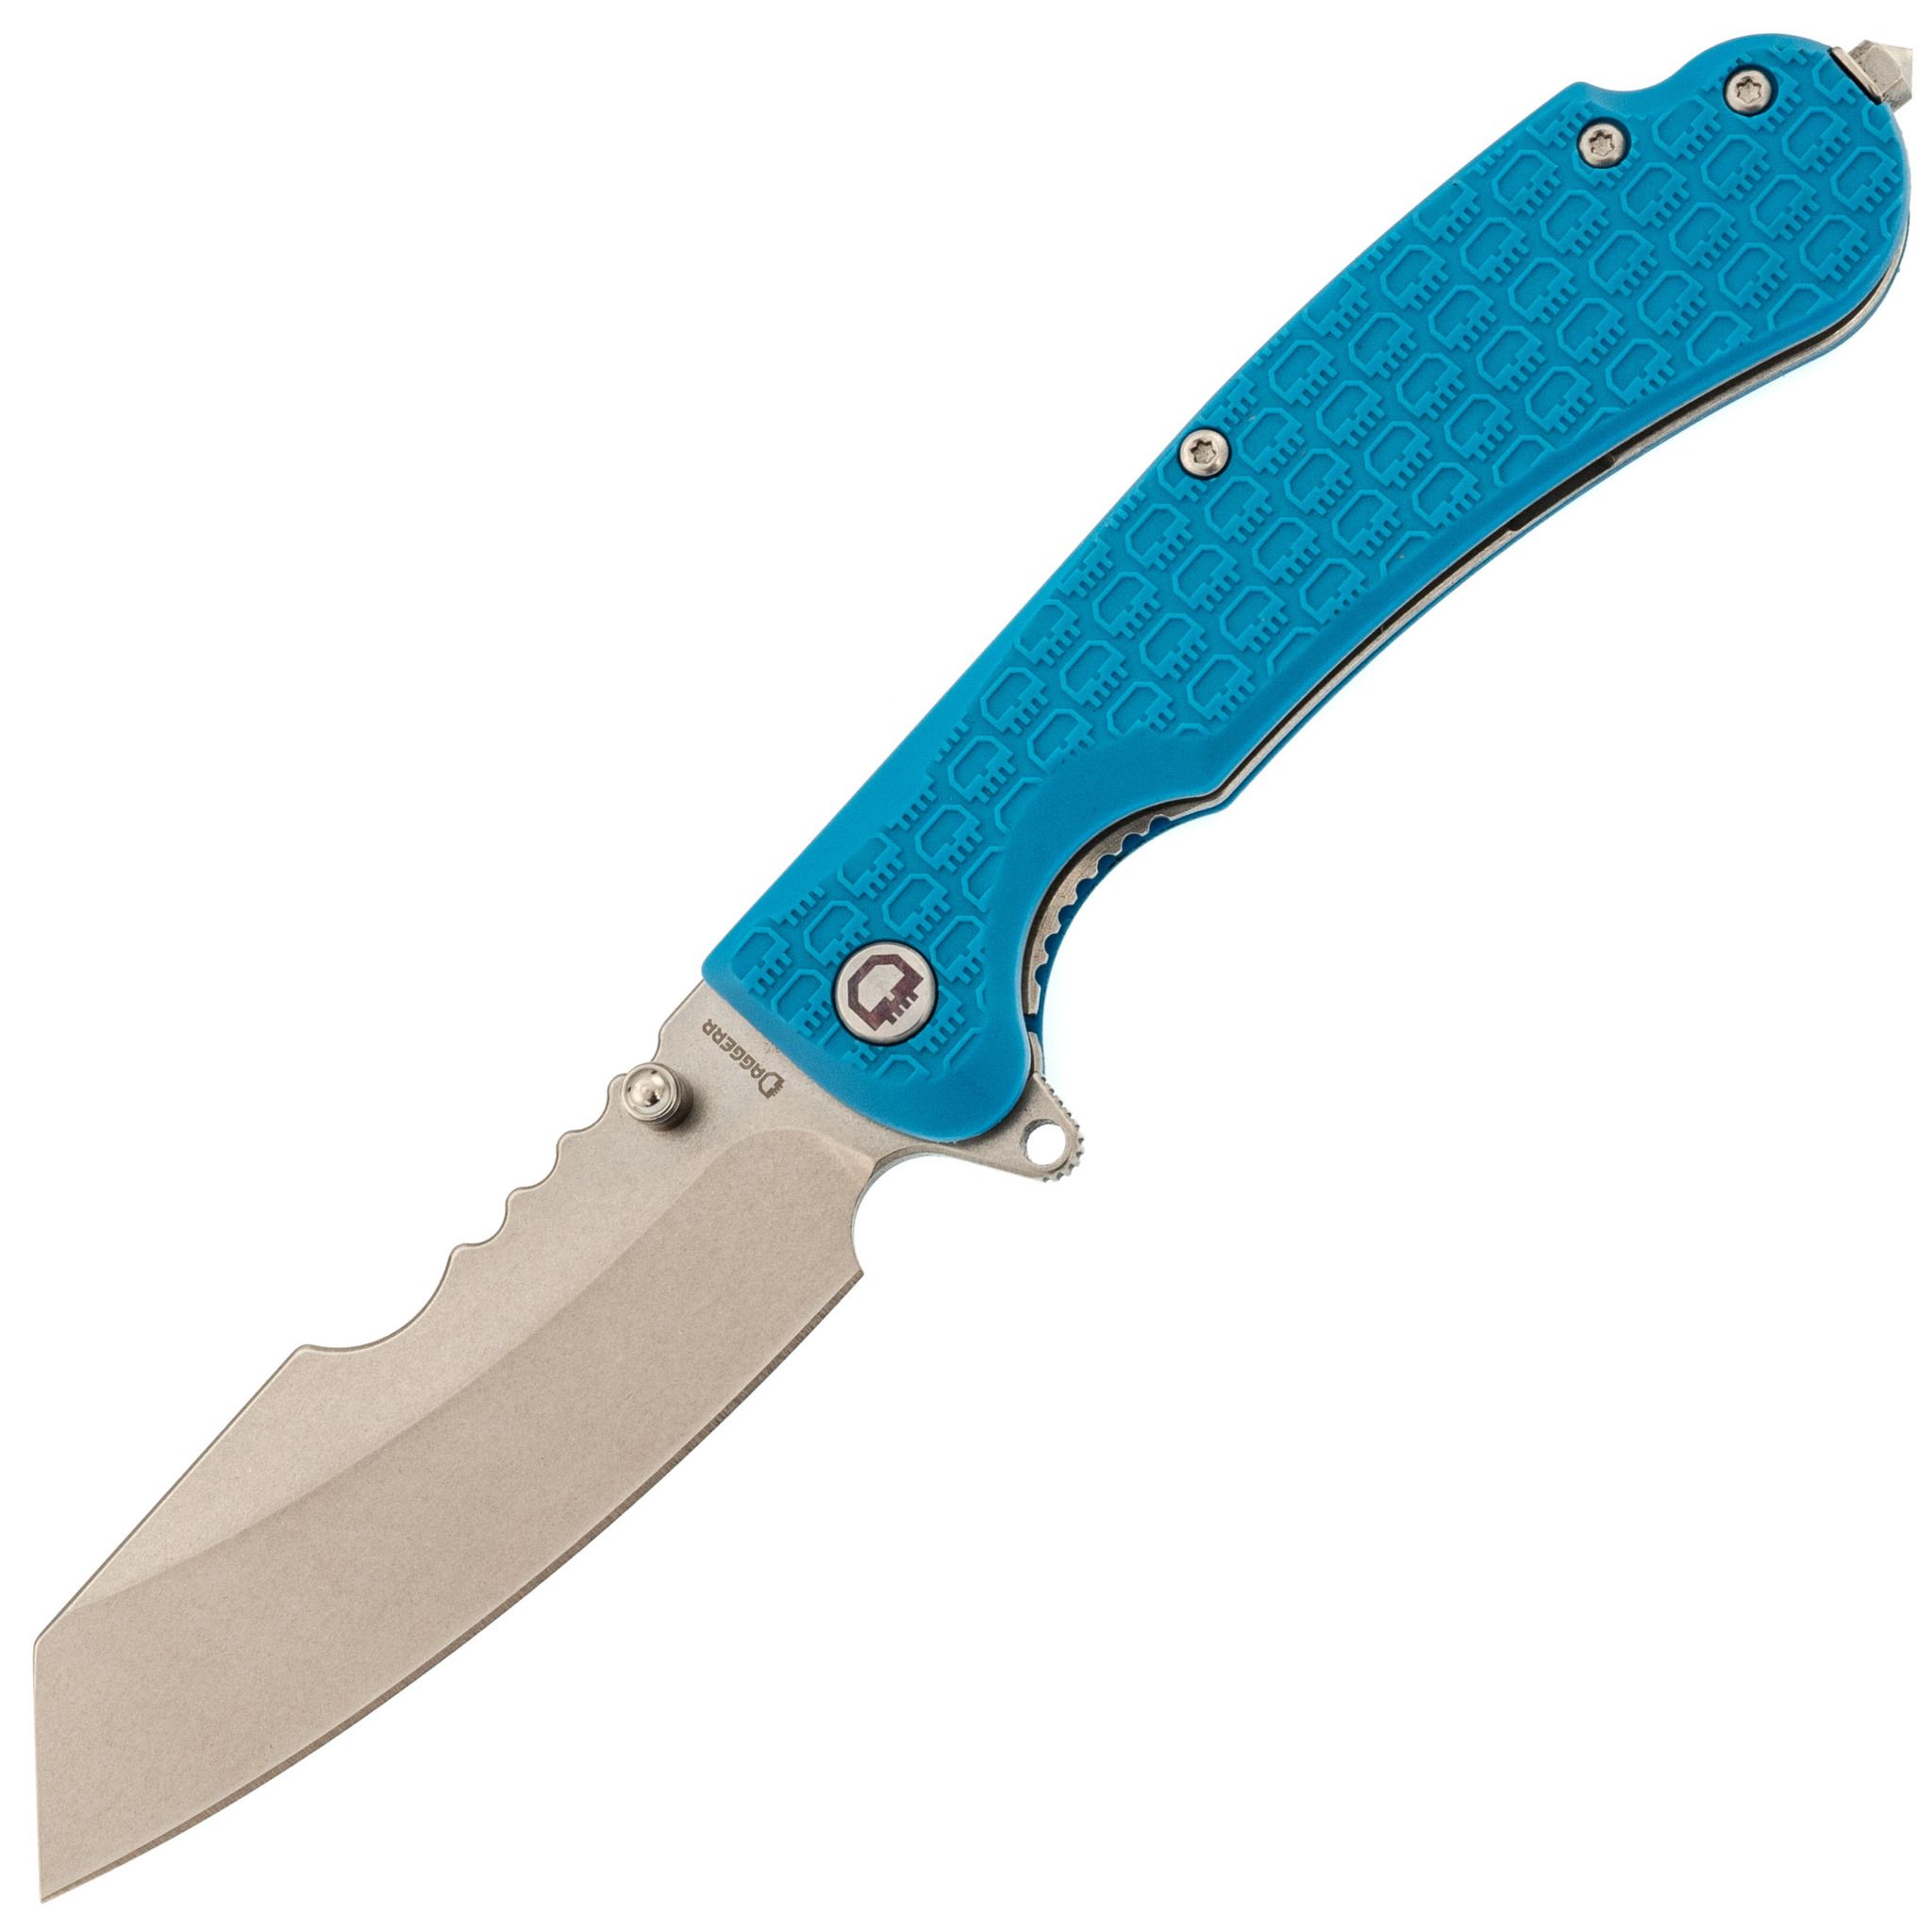 Складной нож Daggerr Rhino Blue SW, сталь 8Cr14MoV, рукоять FRN складной нож boker icepick dagger сталь vg 10 рукоять carbon fiber